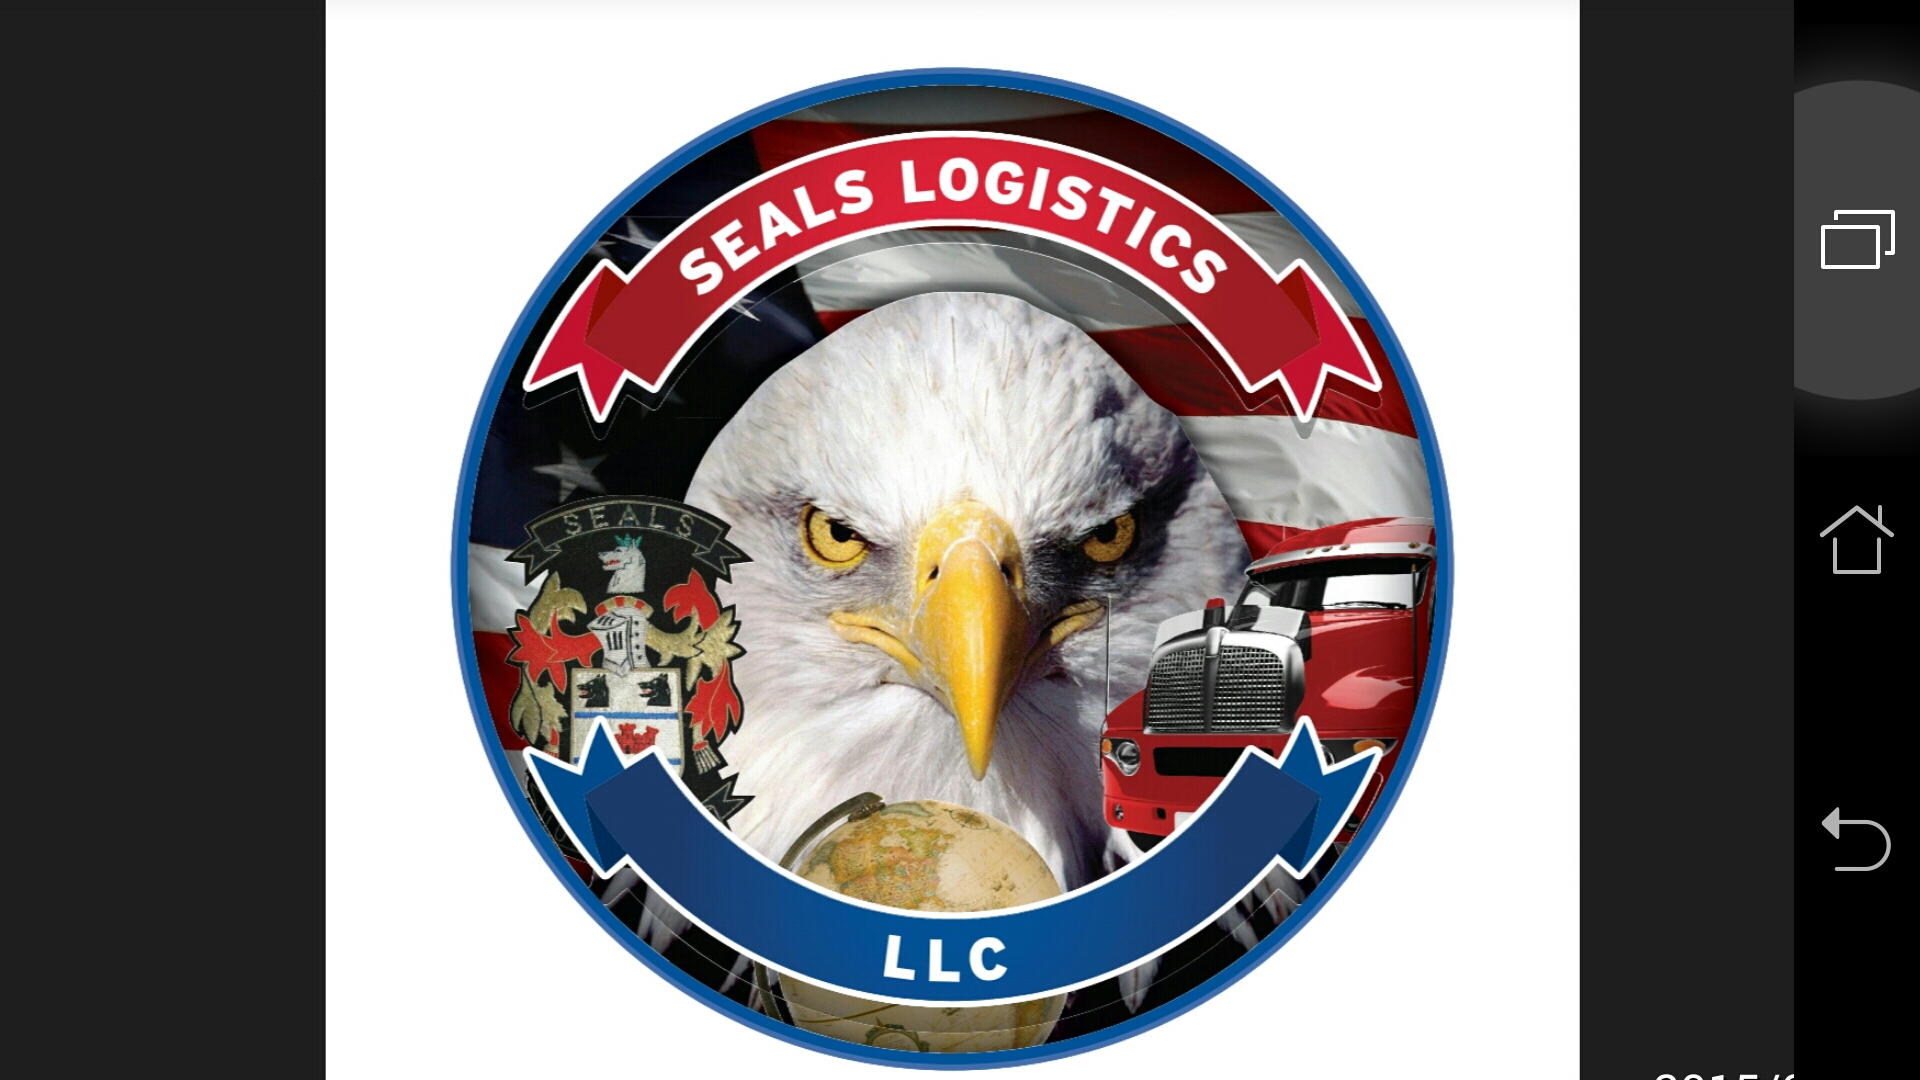 Seals Logistics Logo